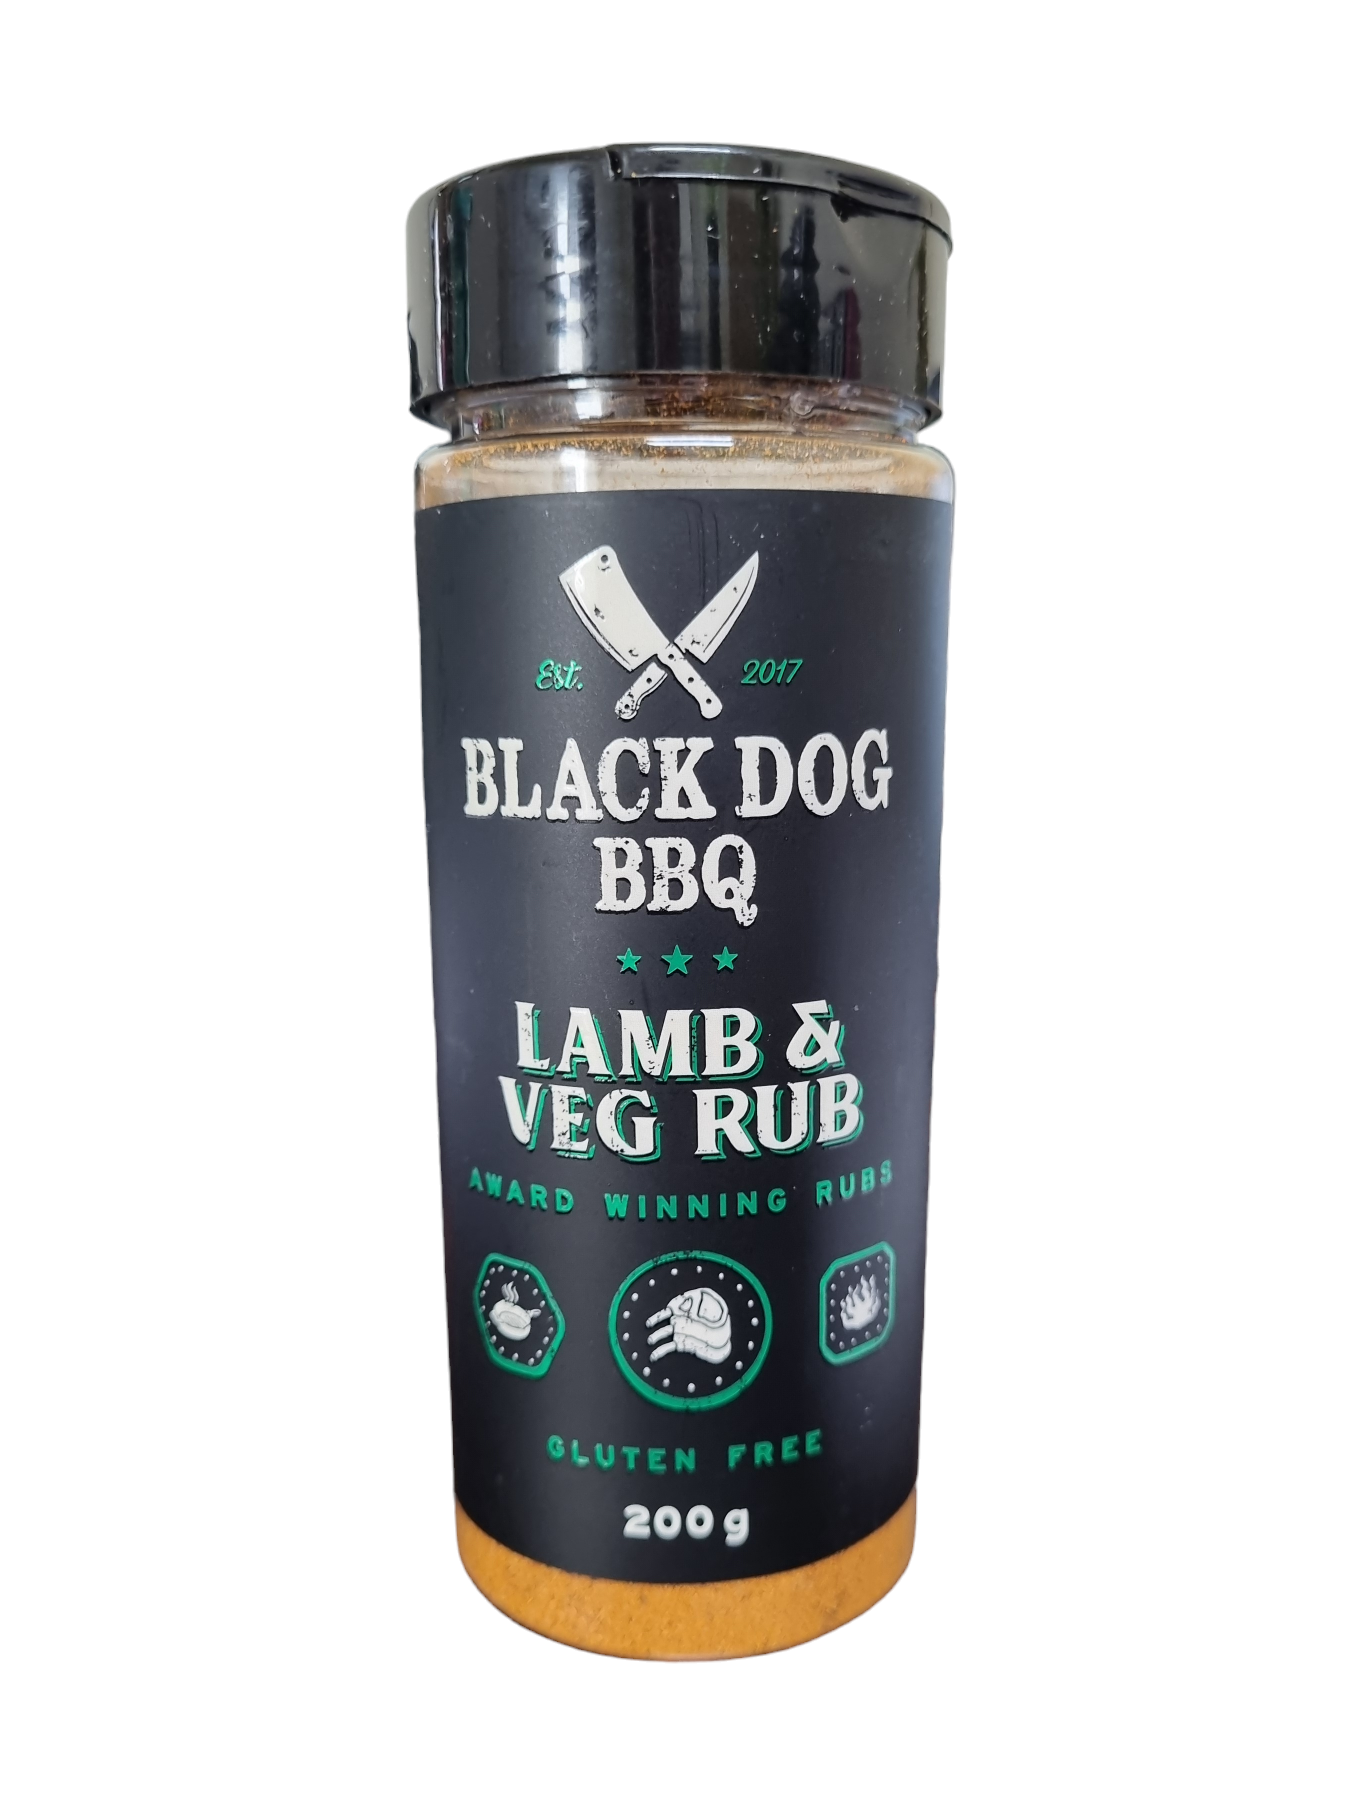 Black Dog BBQ Lamb & Veg Rub